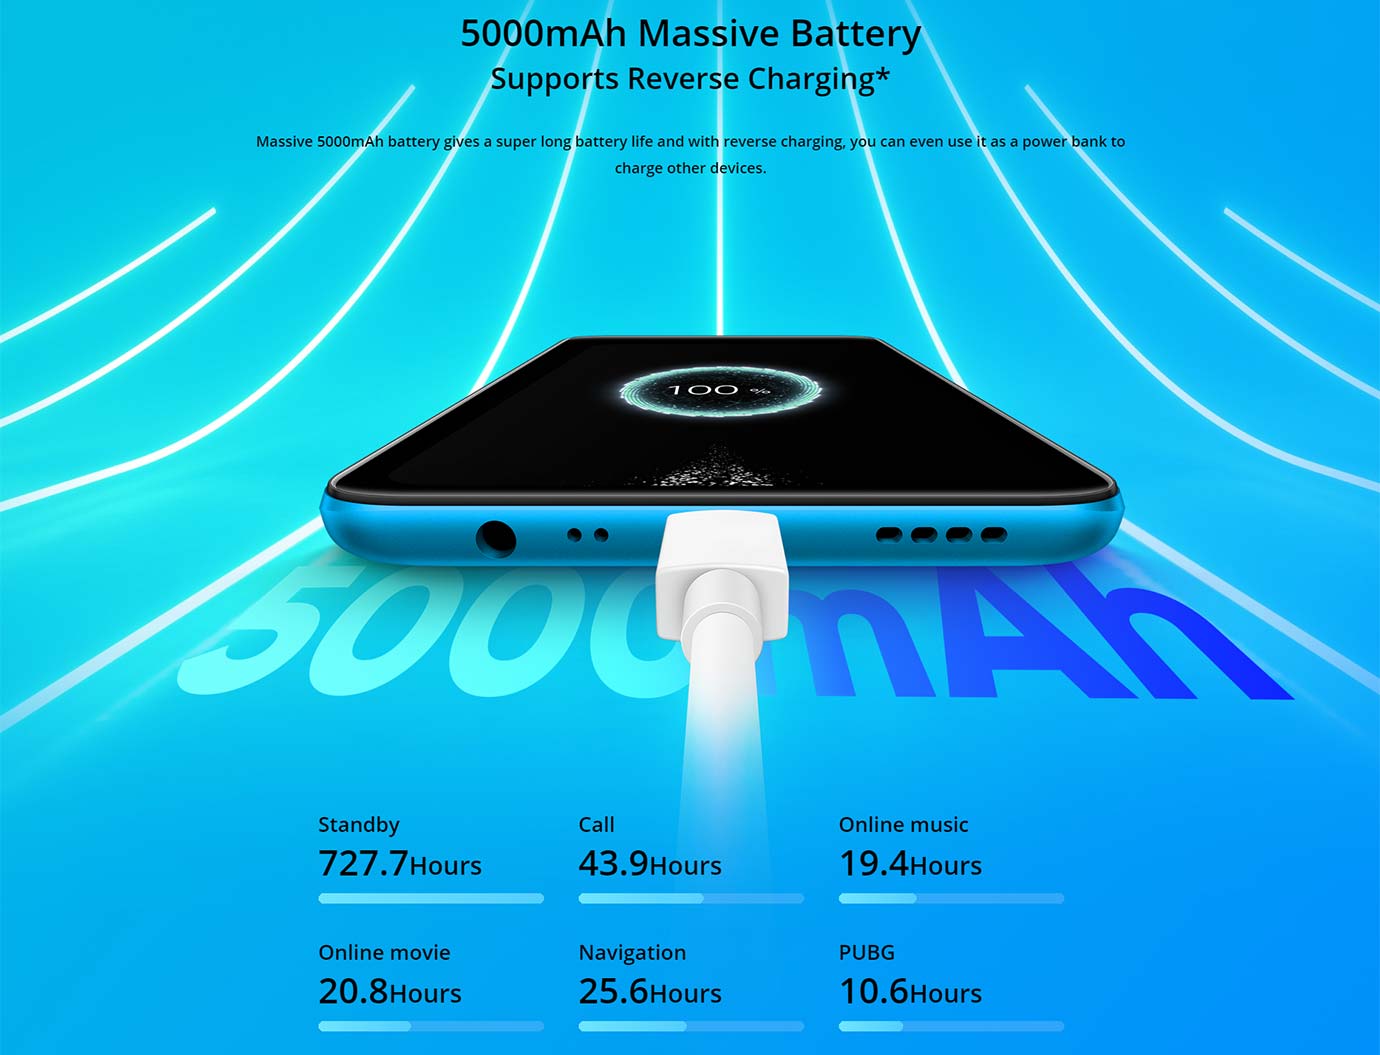 5000mAh Massive Battery